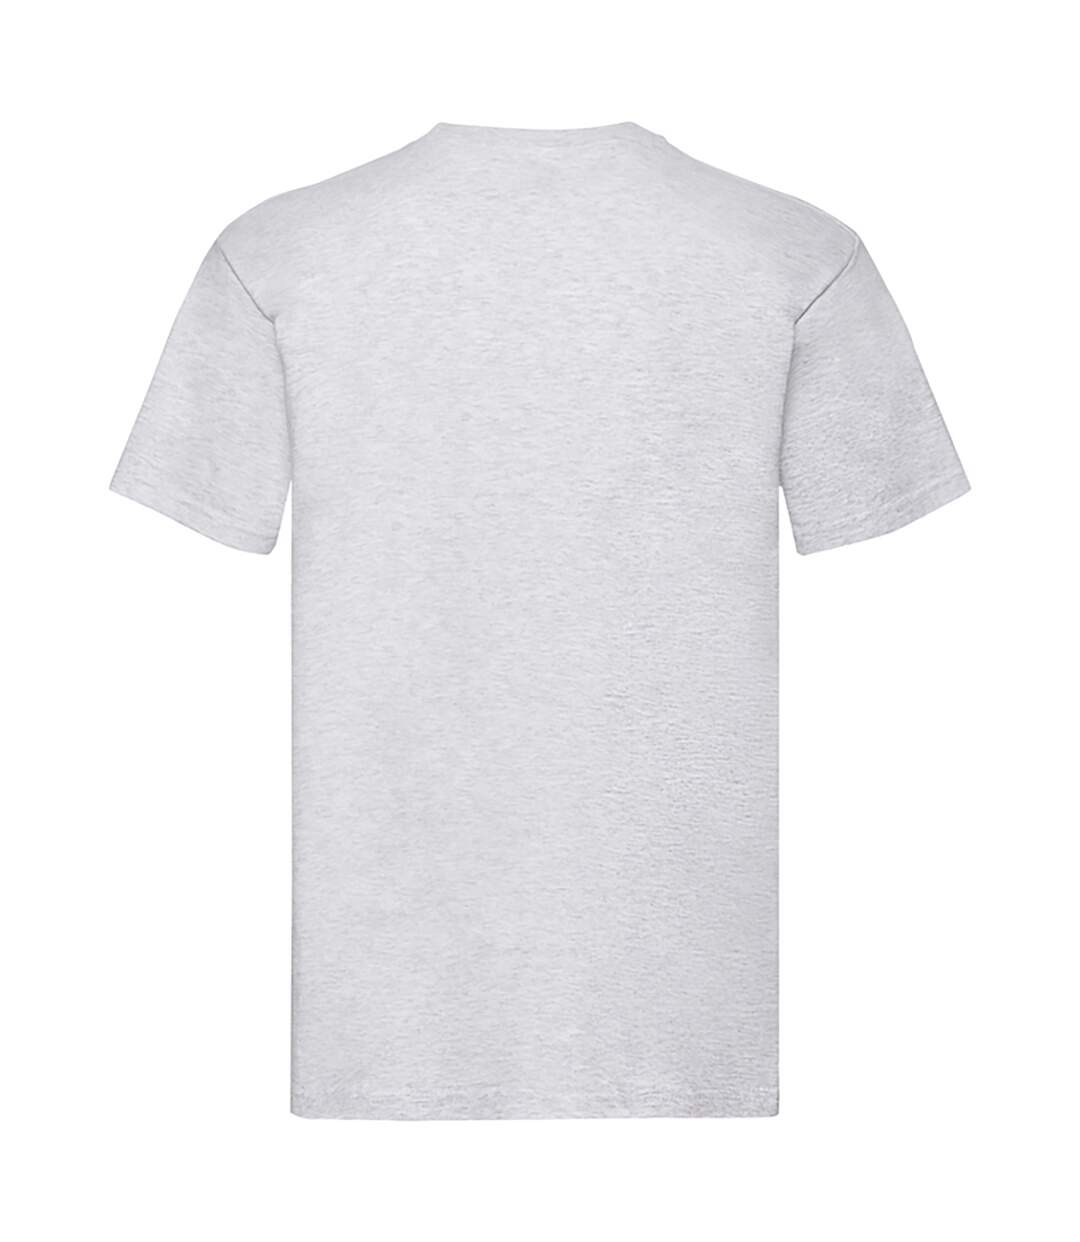 Fruit Of The Loom - T-shirt à manches courtes - Hommes (Gris cendré) - UTBC333